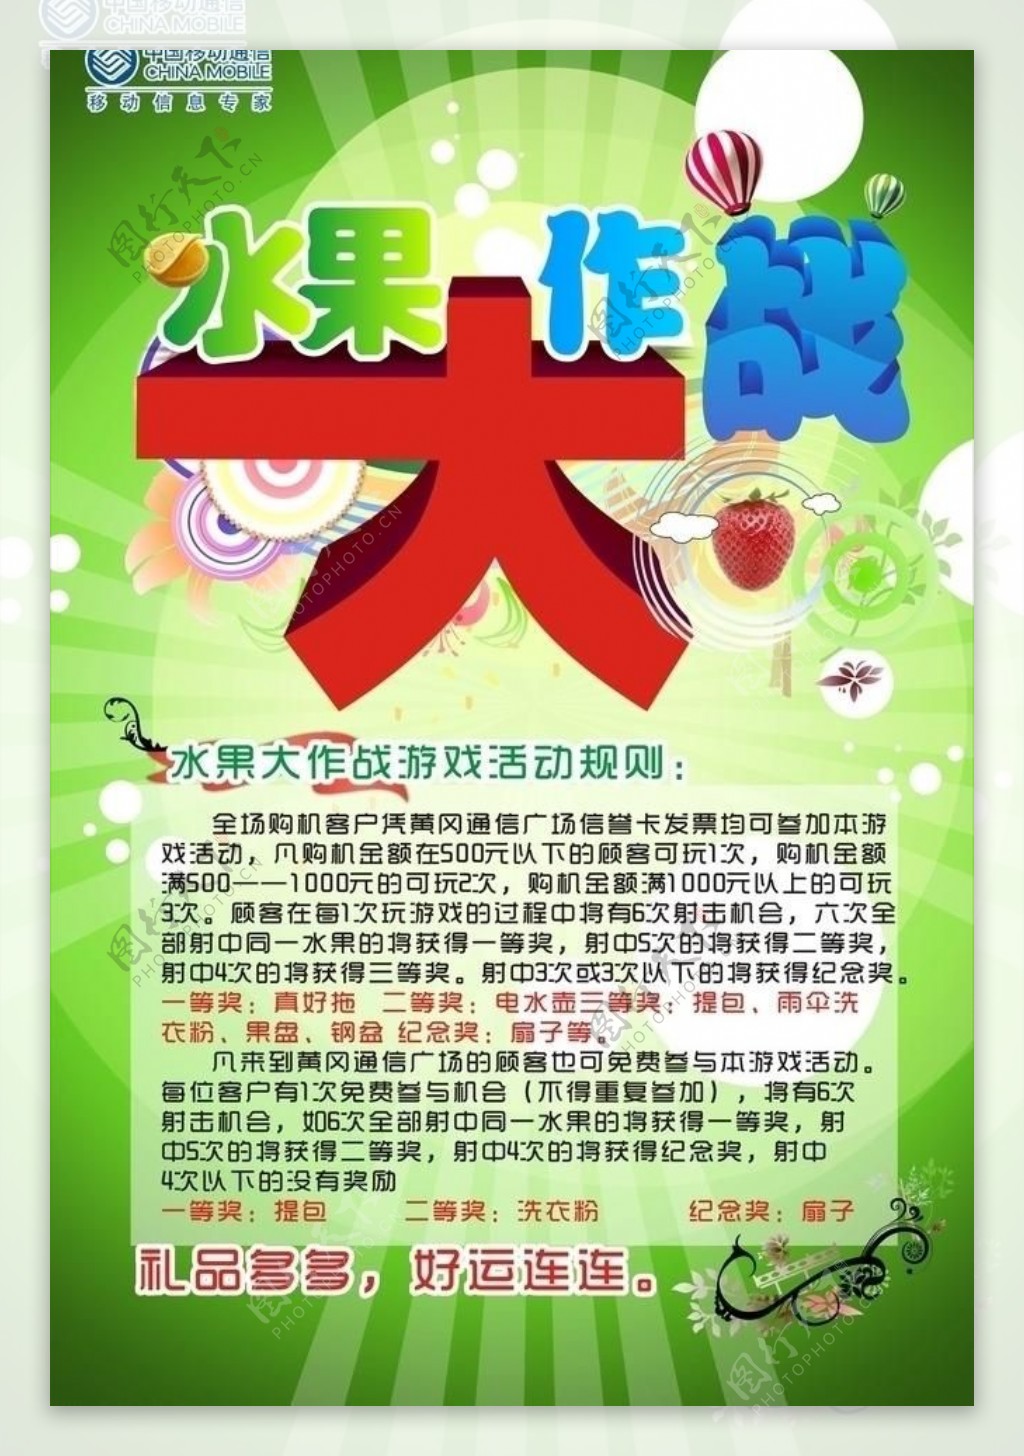 水果大作战中国移动广告图片